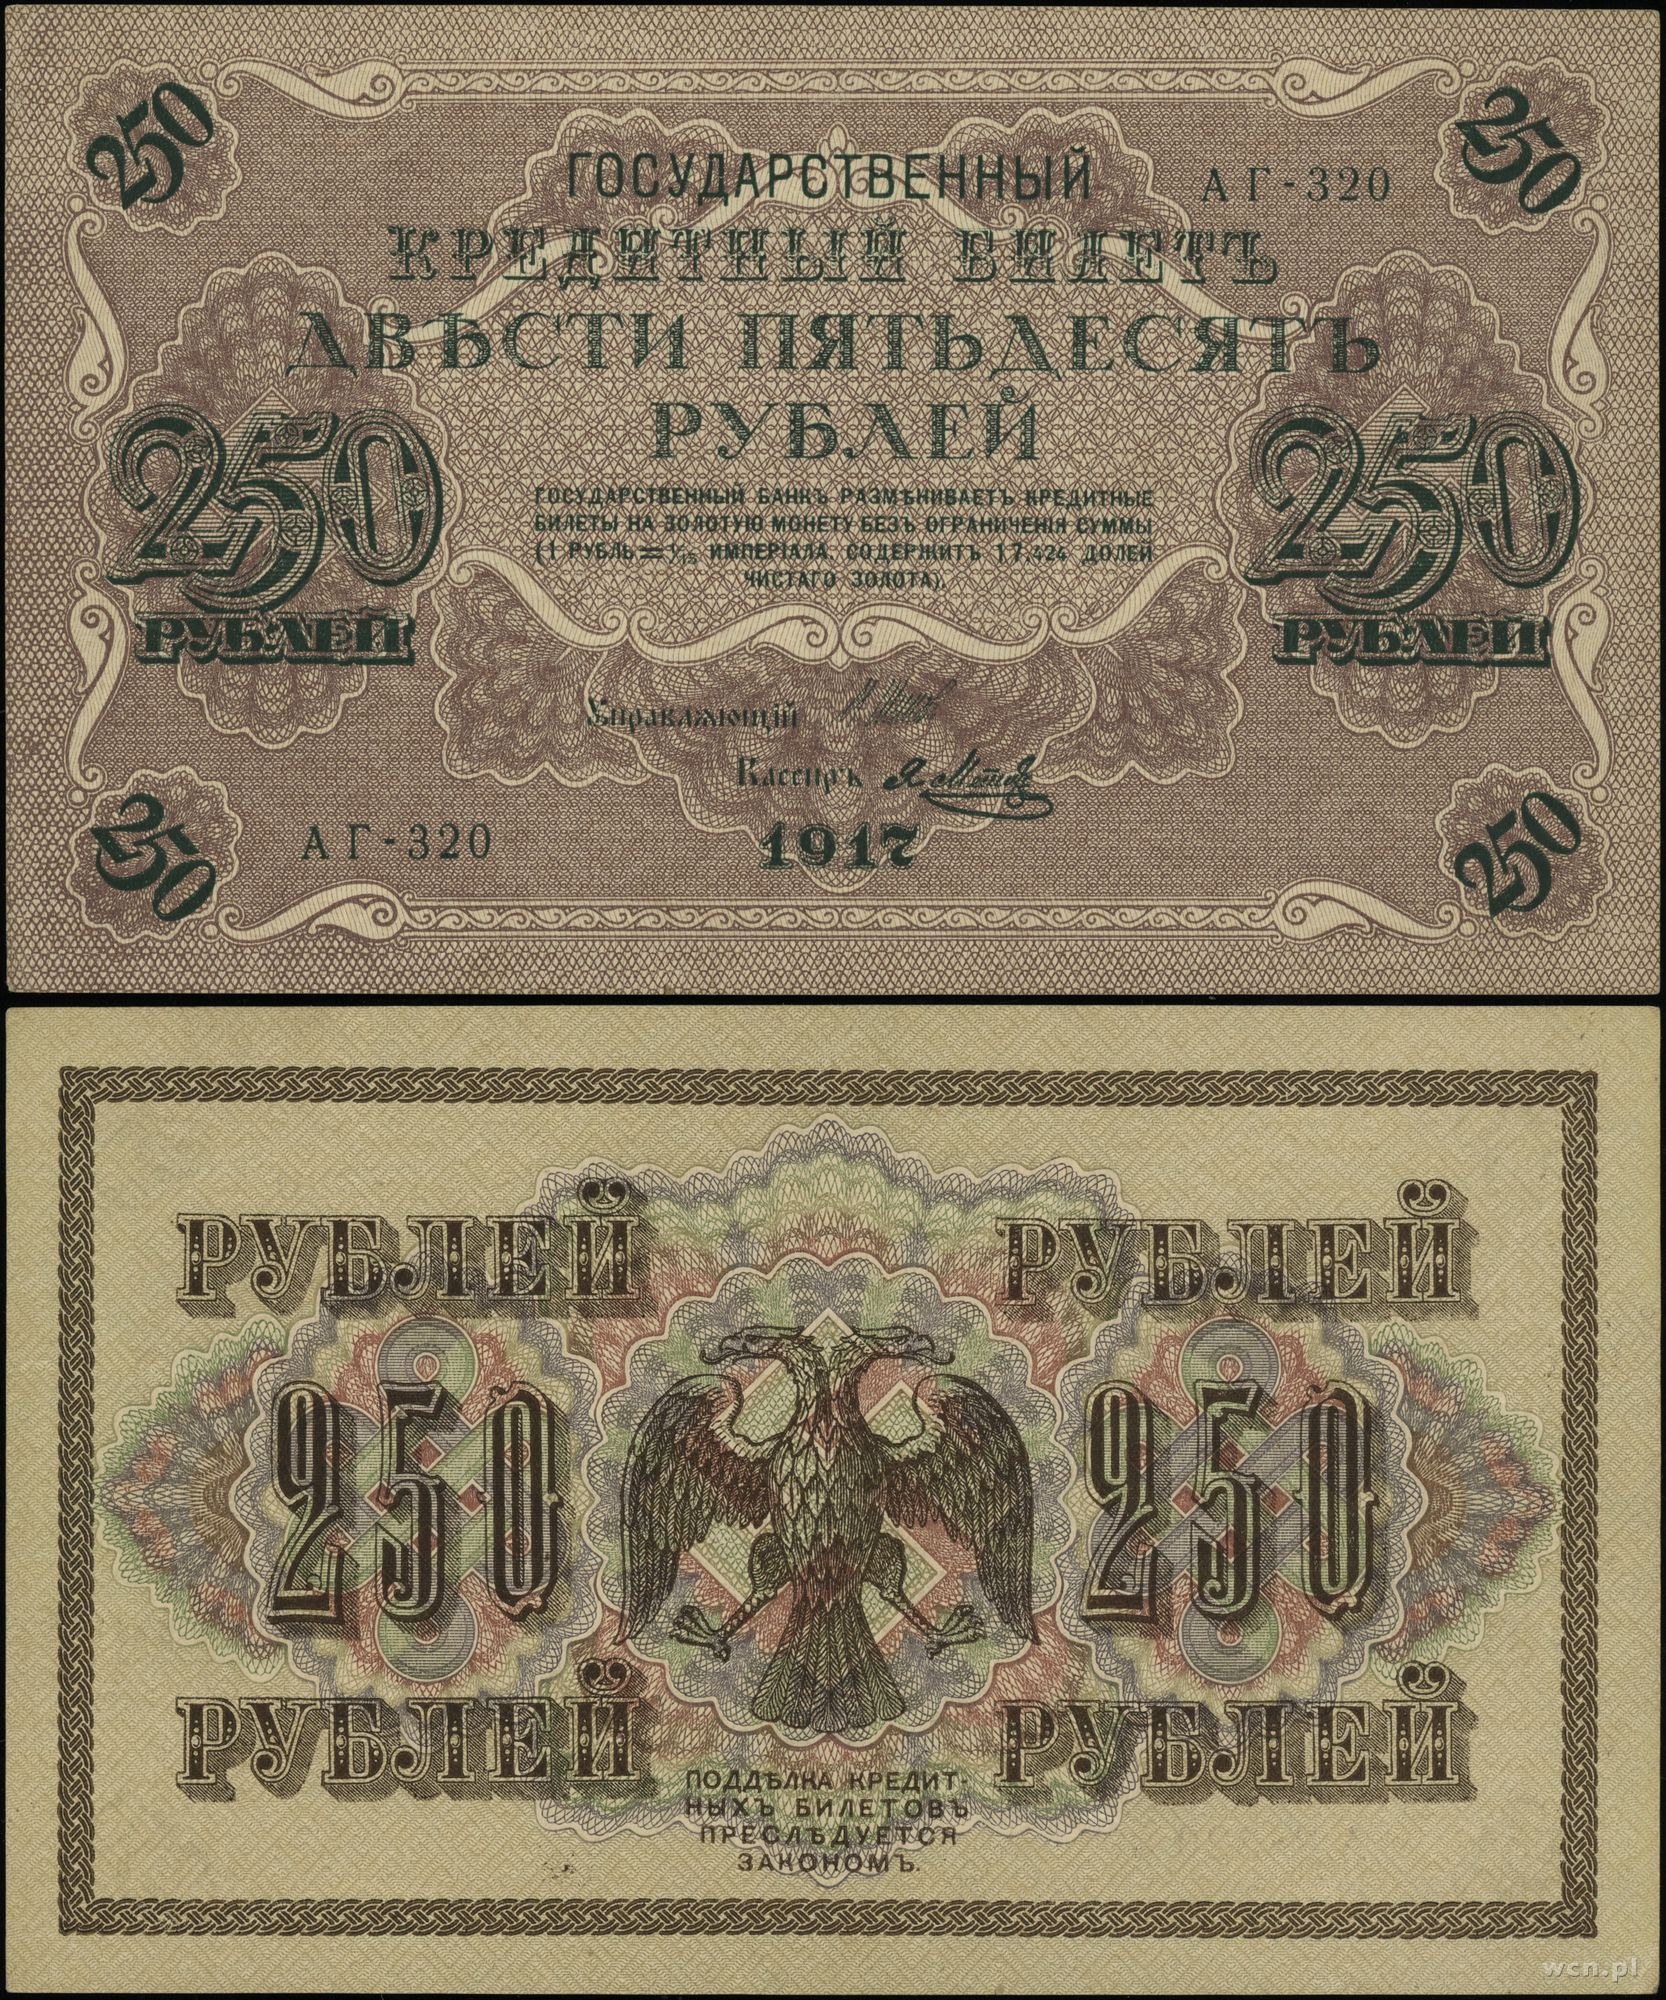 250 рублей билет